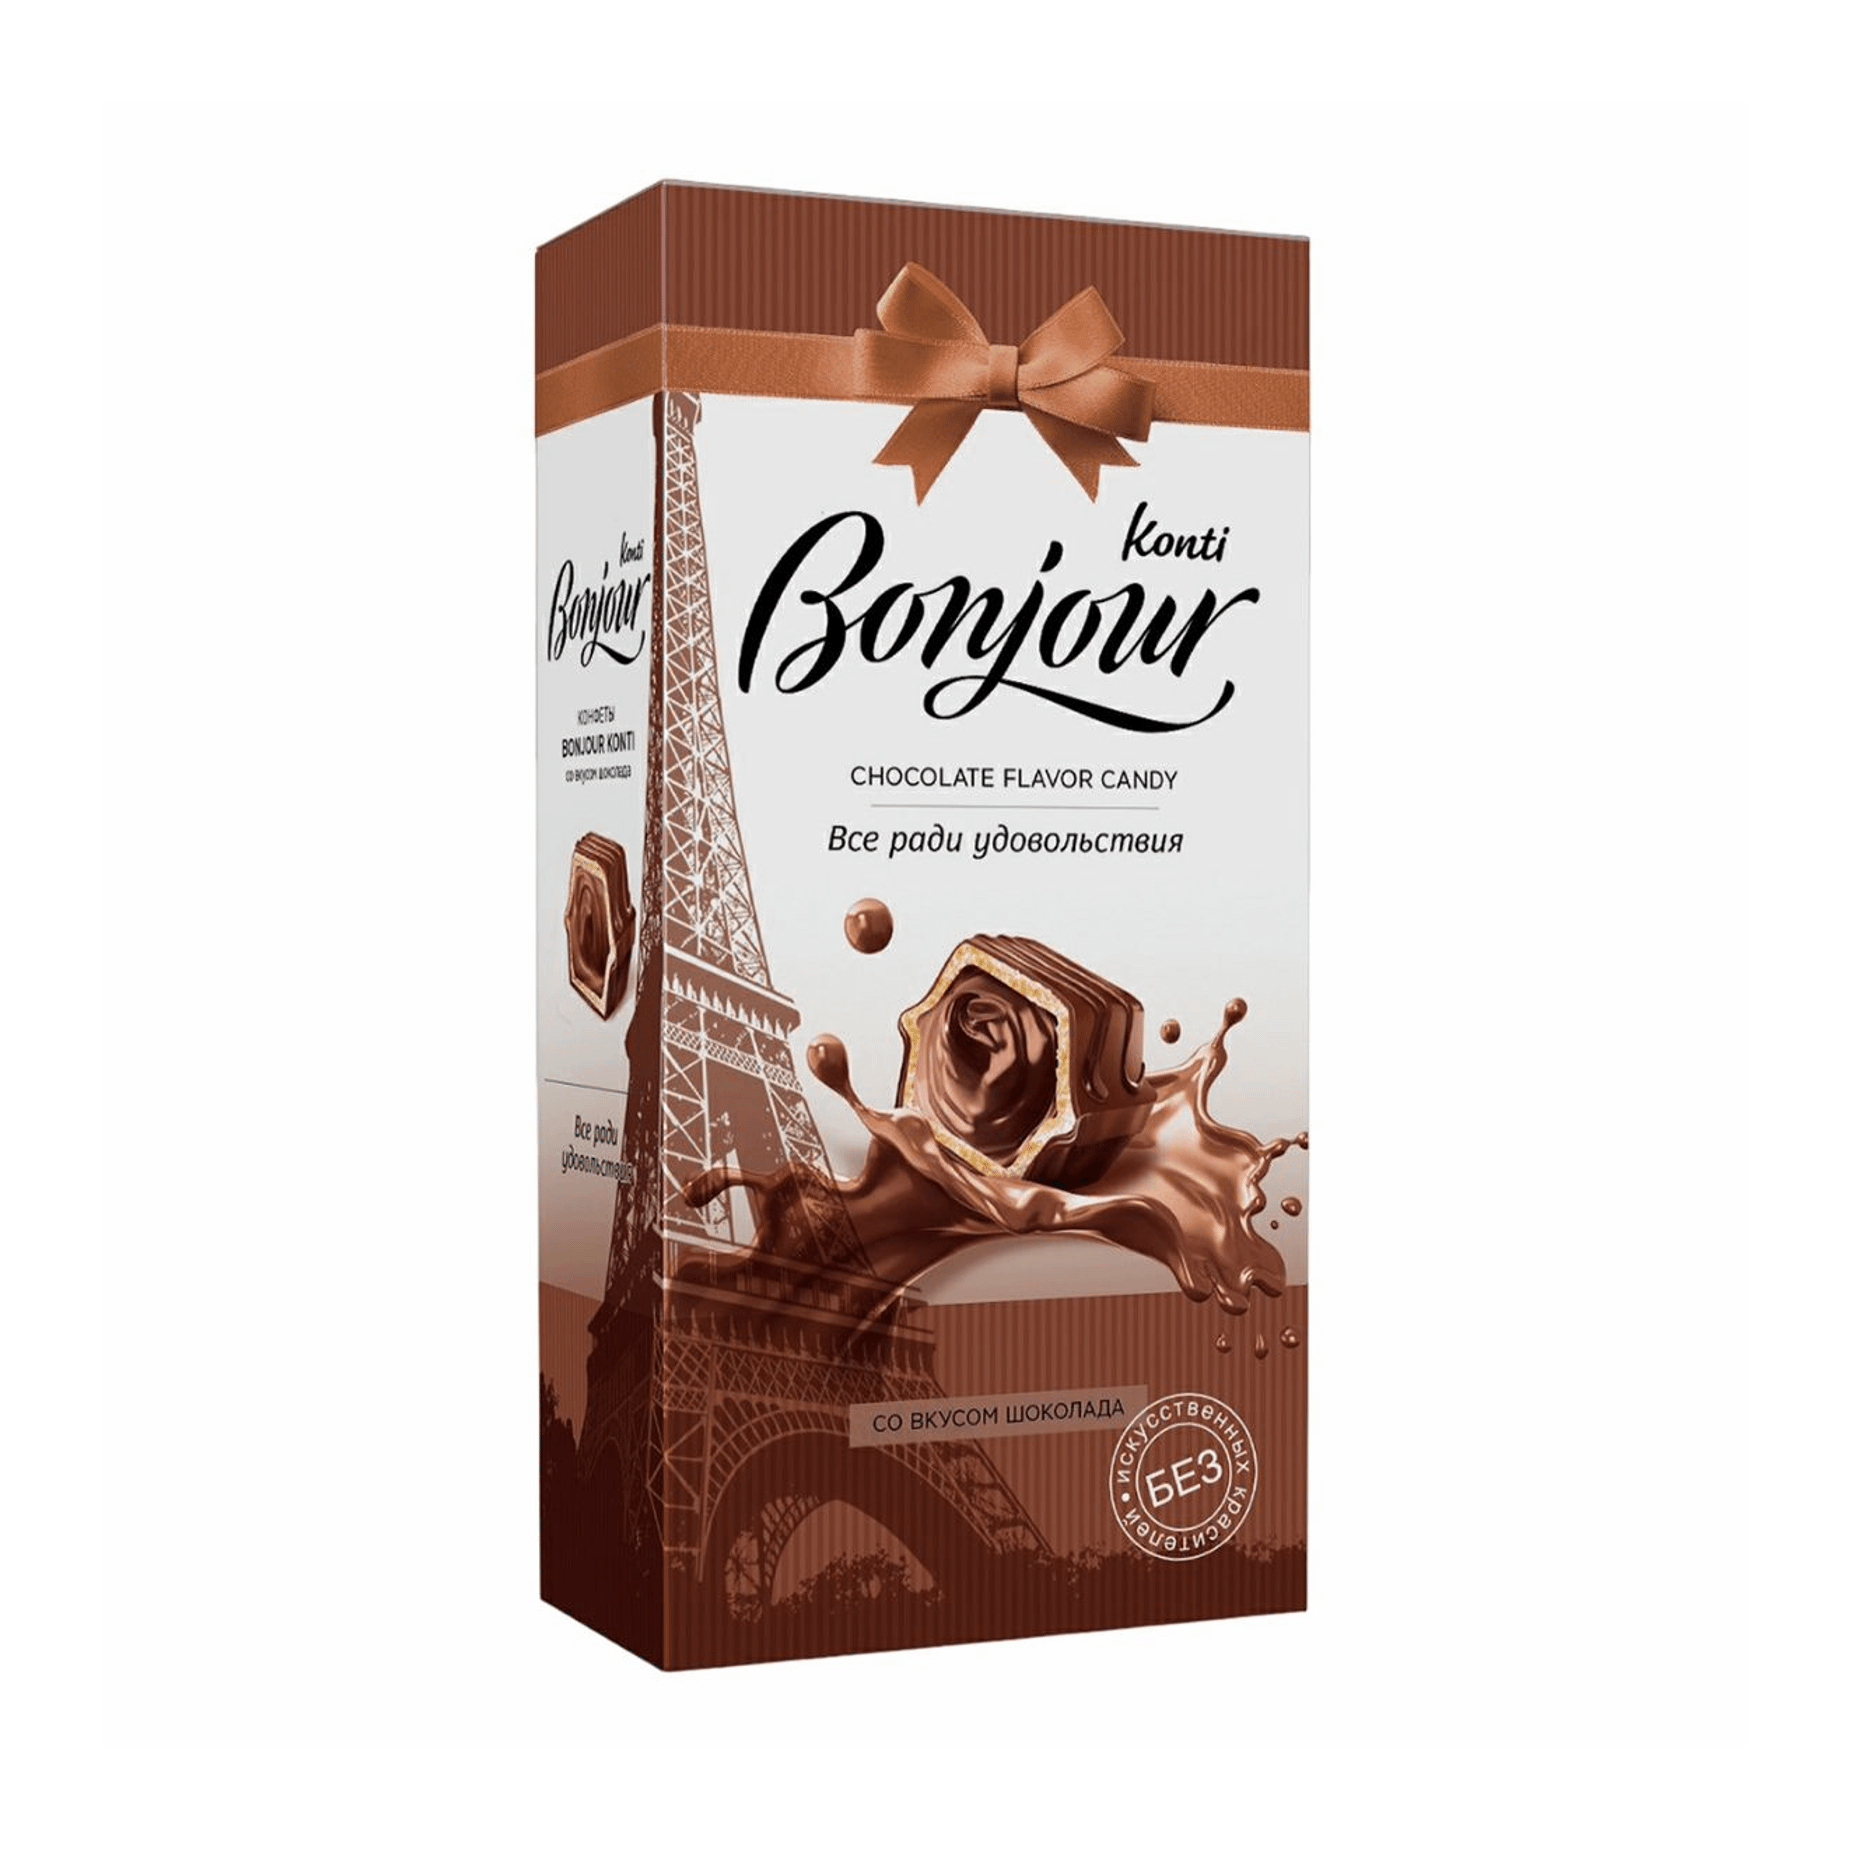 Конфеты шоколадные Konti Bonjour со вкусом шоколада 80 г конфеты шоколадные истории konti джек с вафельной крошкой 250 г